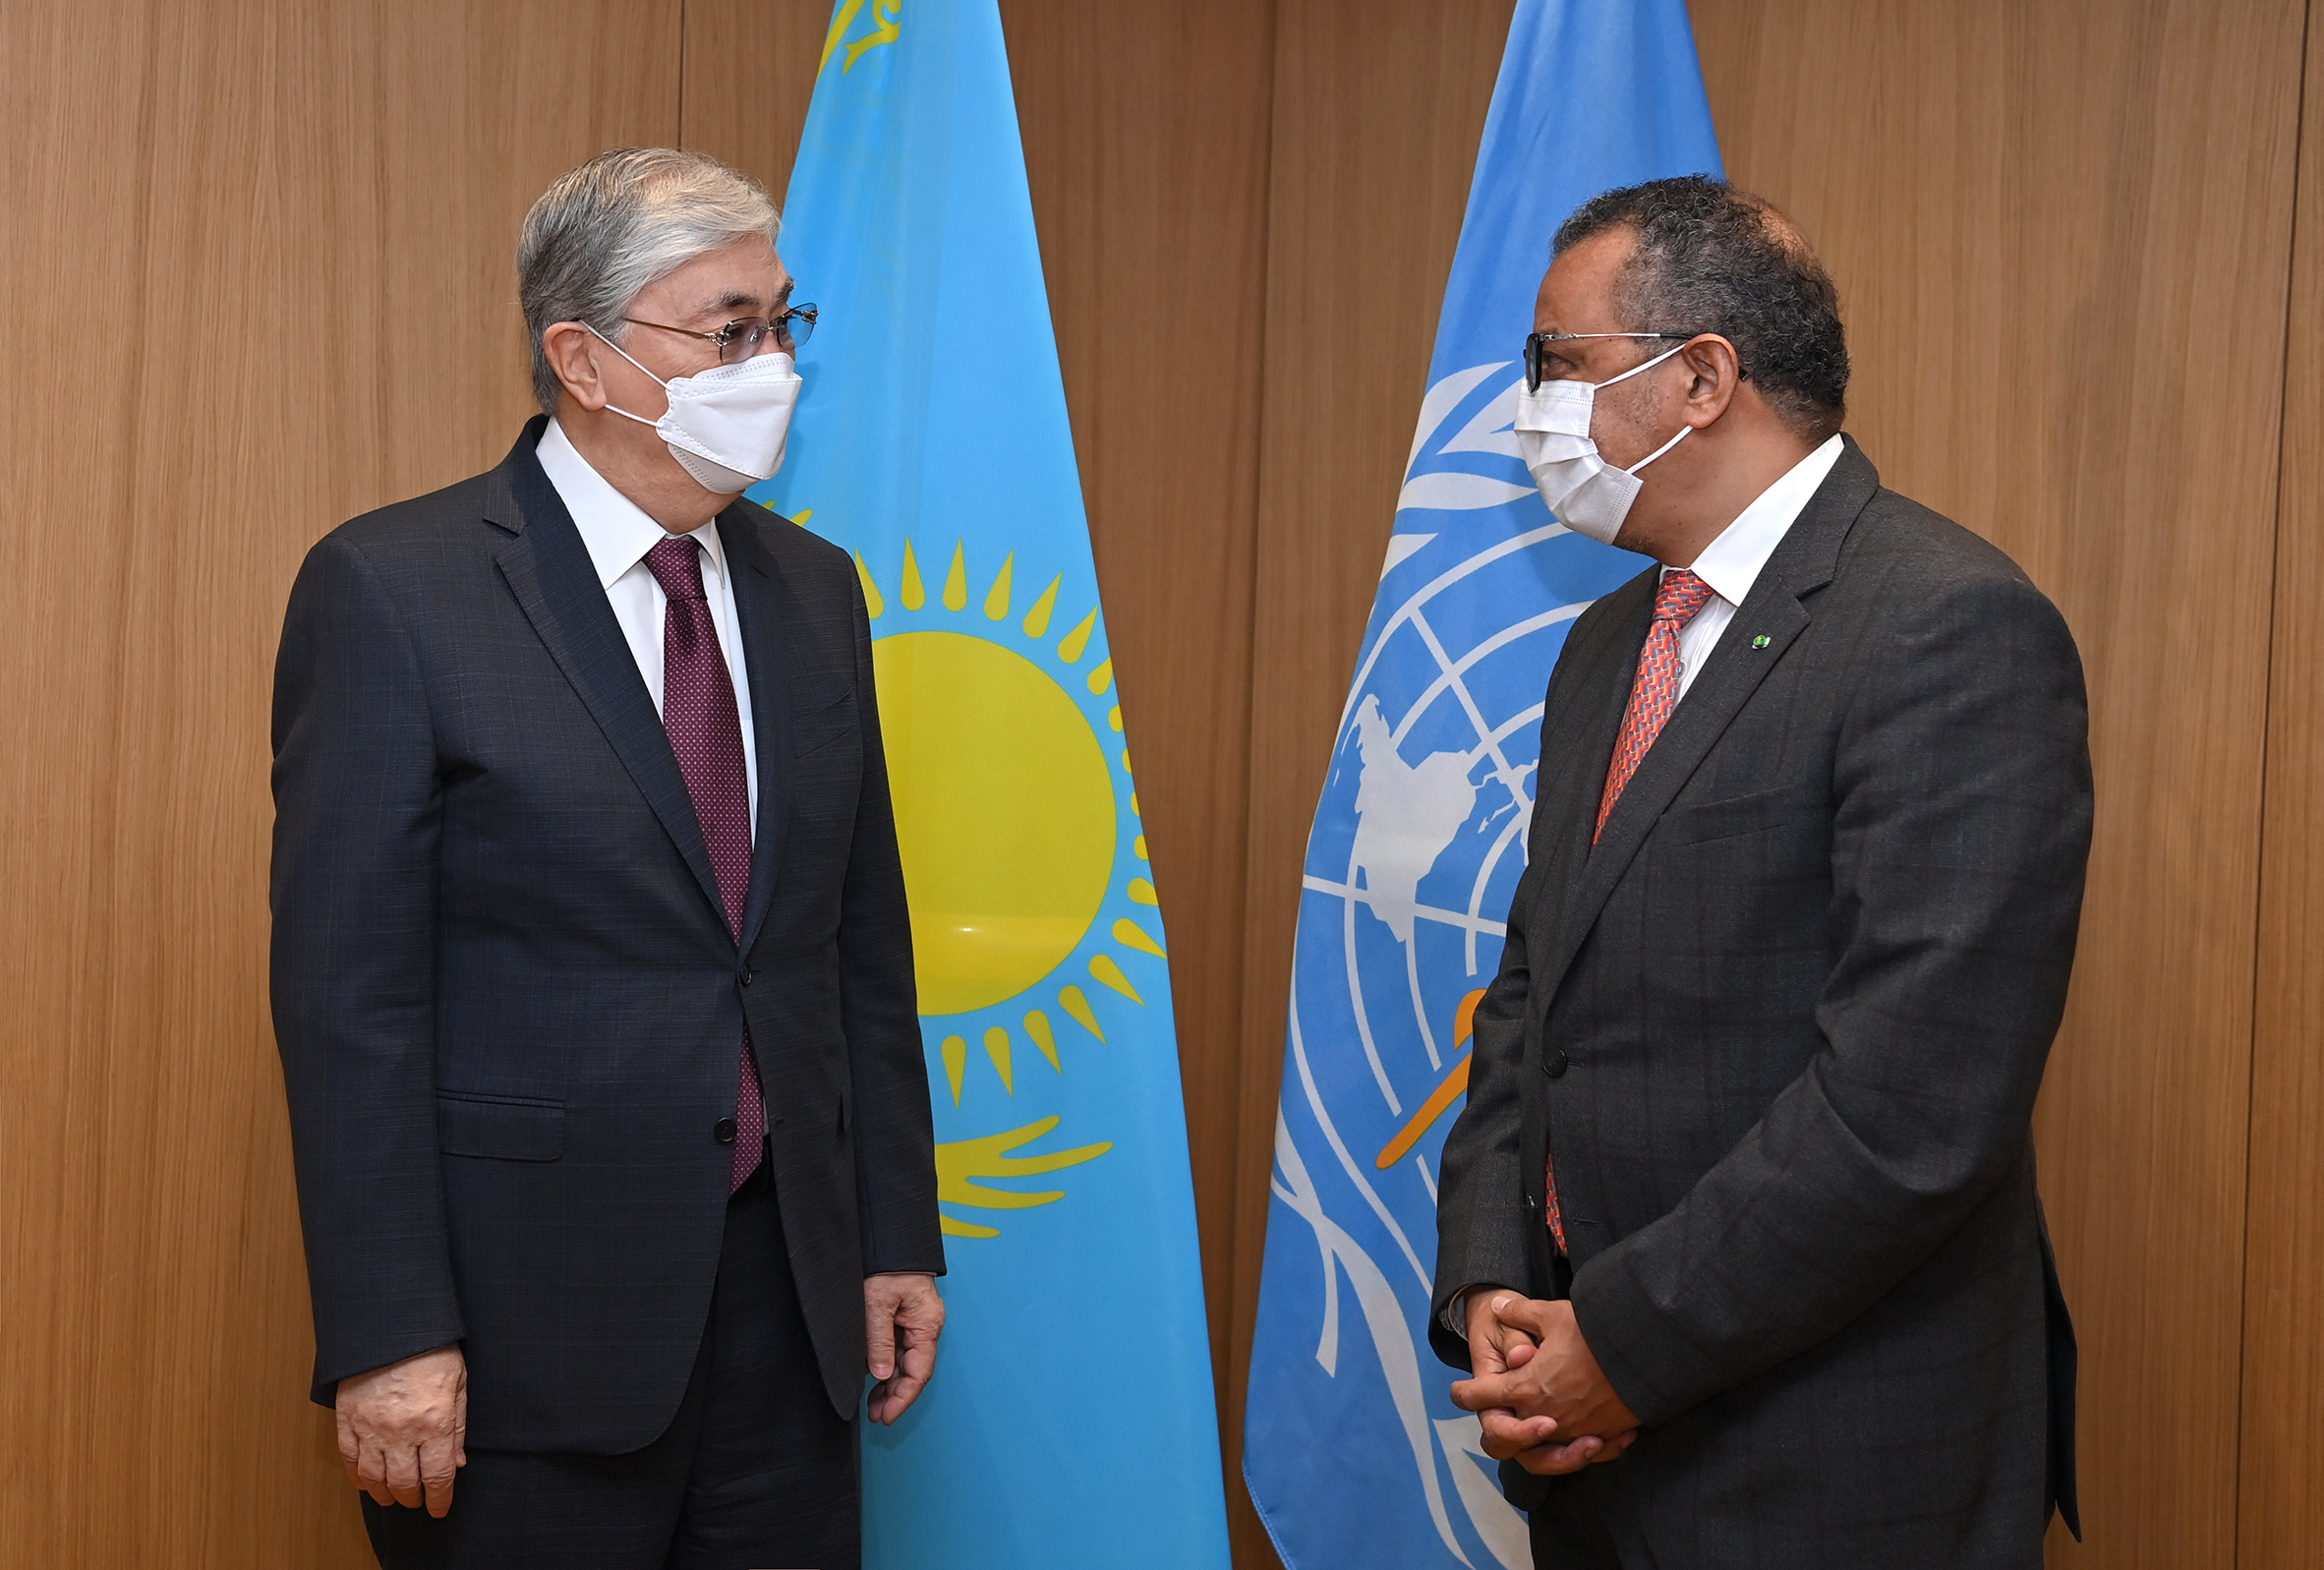 Le président du Kazakhstan a rencontré le directeur général de l’OMS et a proposé de promouvoir les soins de santé primaires en même temps que la couverture sanitaire universelle.